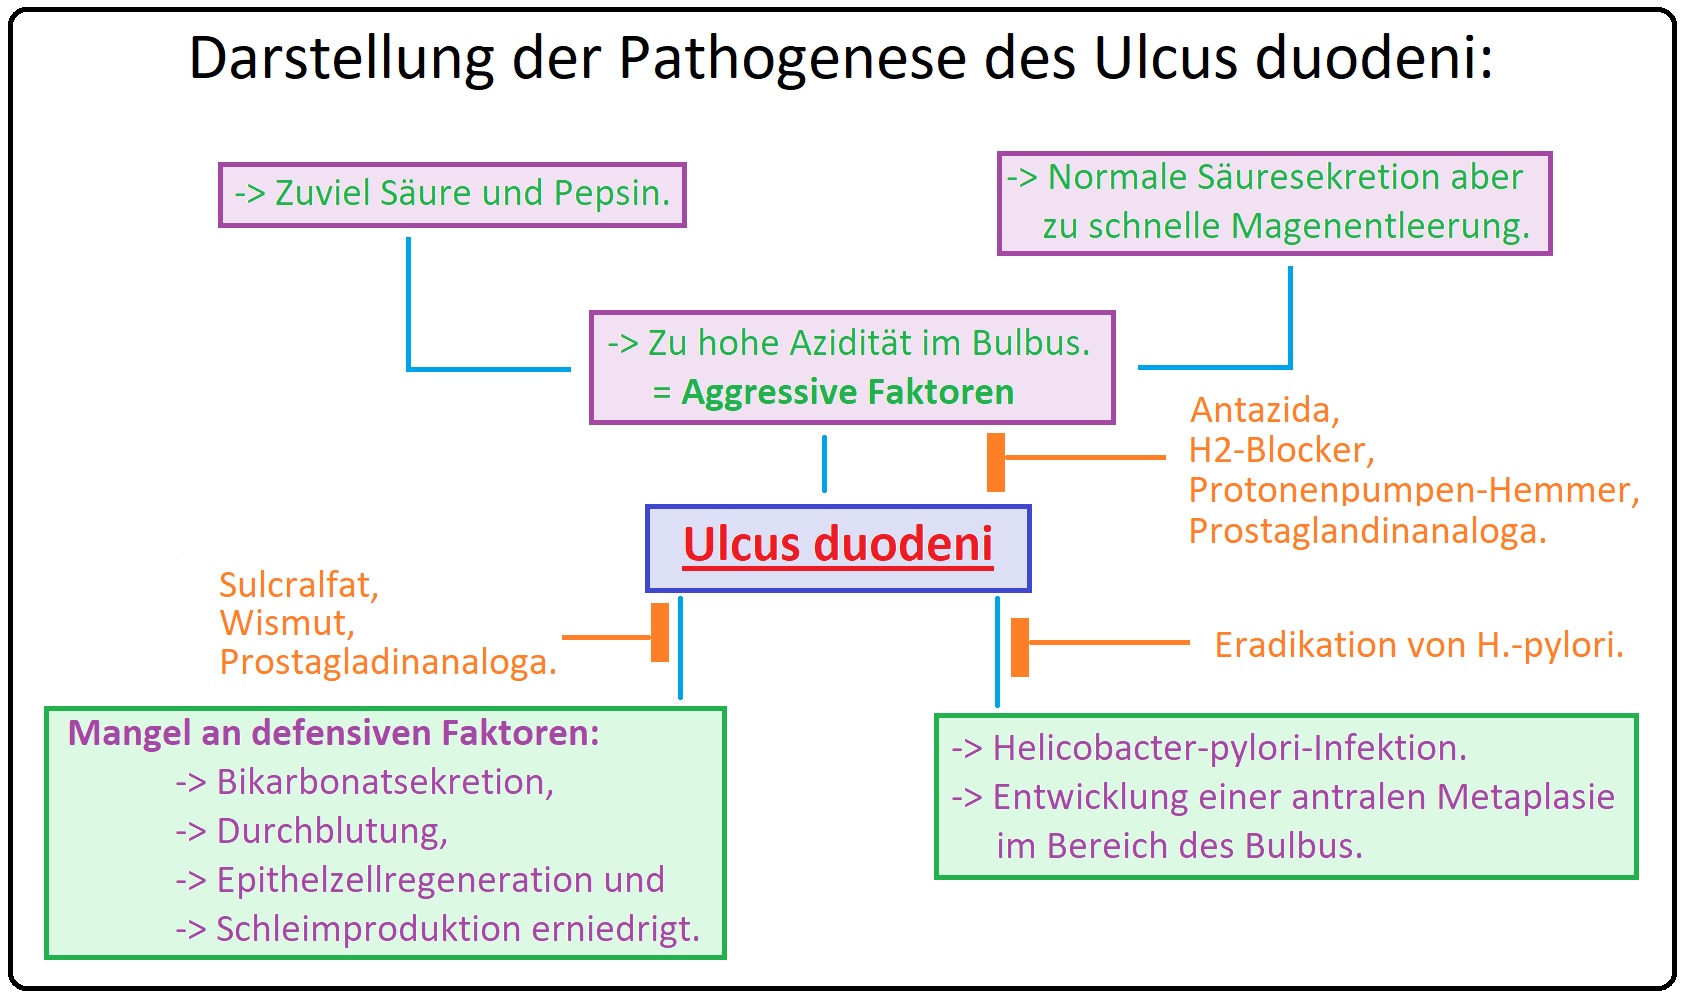 573 Darstellung der Pathogenese des Ulcus duodeni